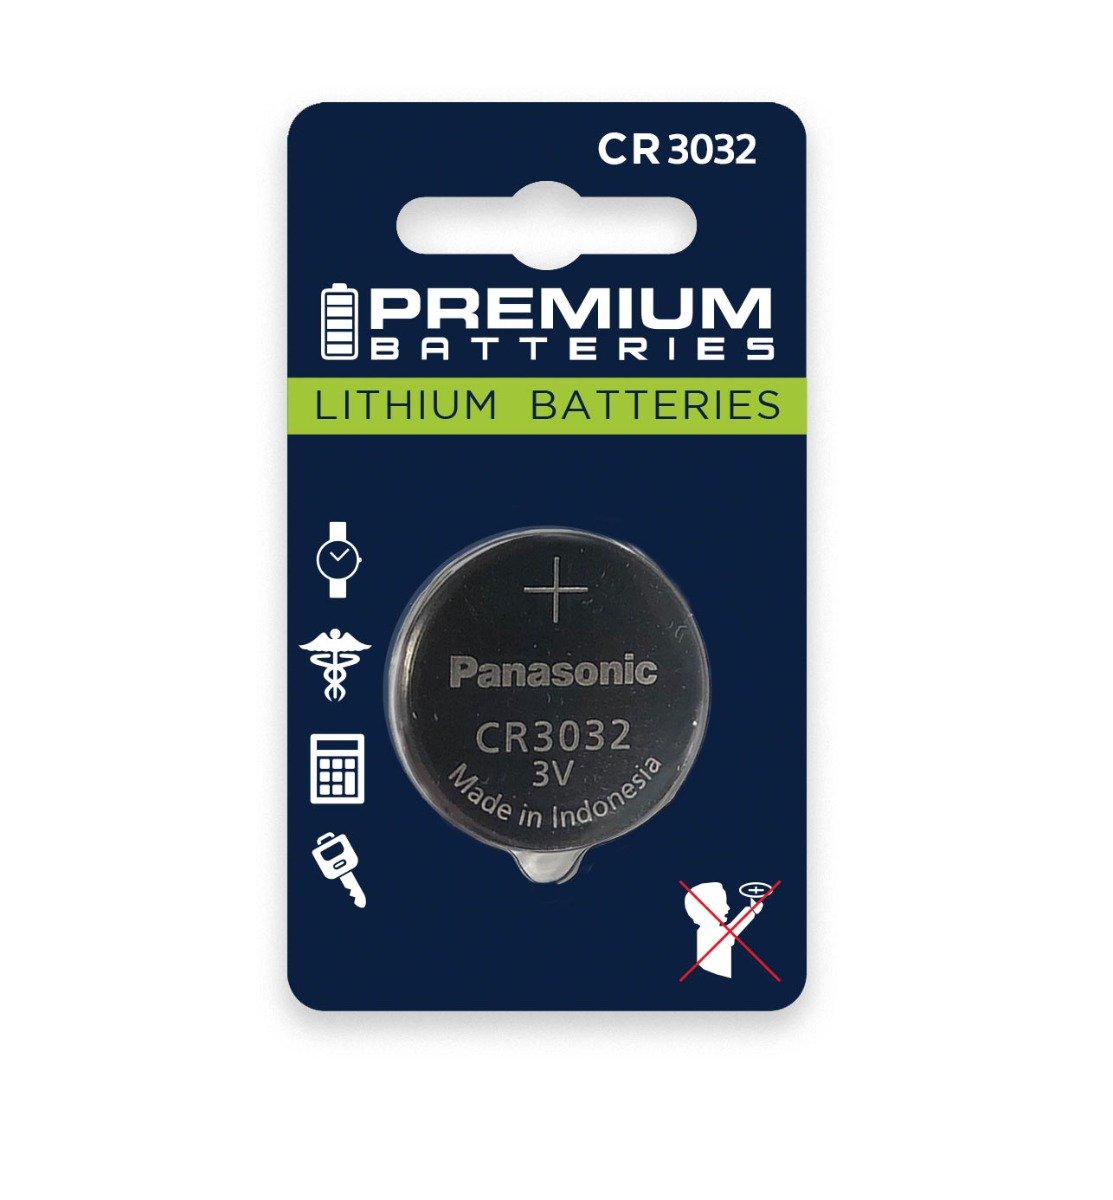 Duracell CR2450 Lithium Coin Battery, DL2450BPK (1 Battery)